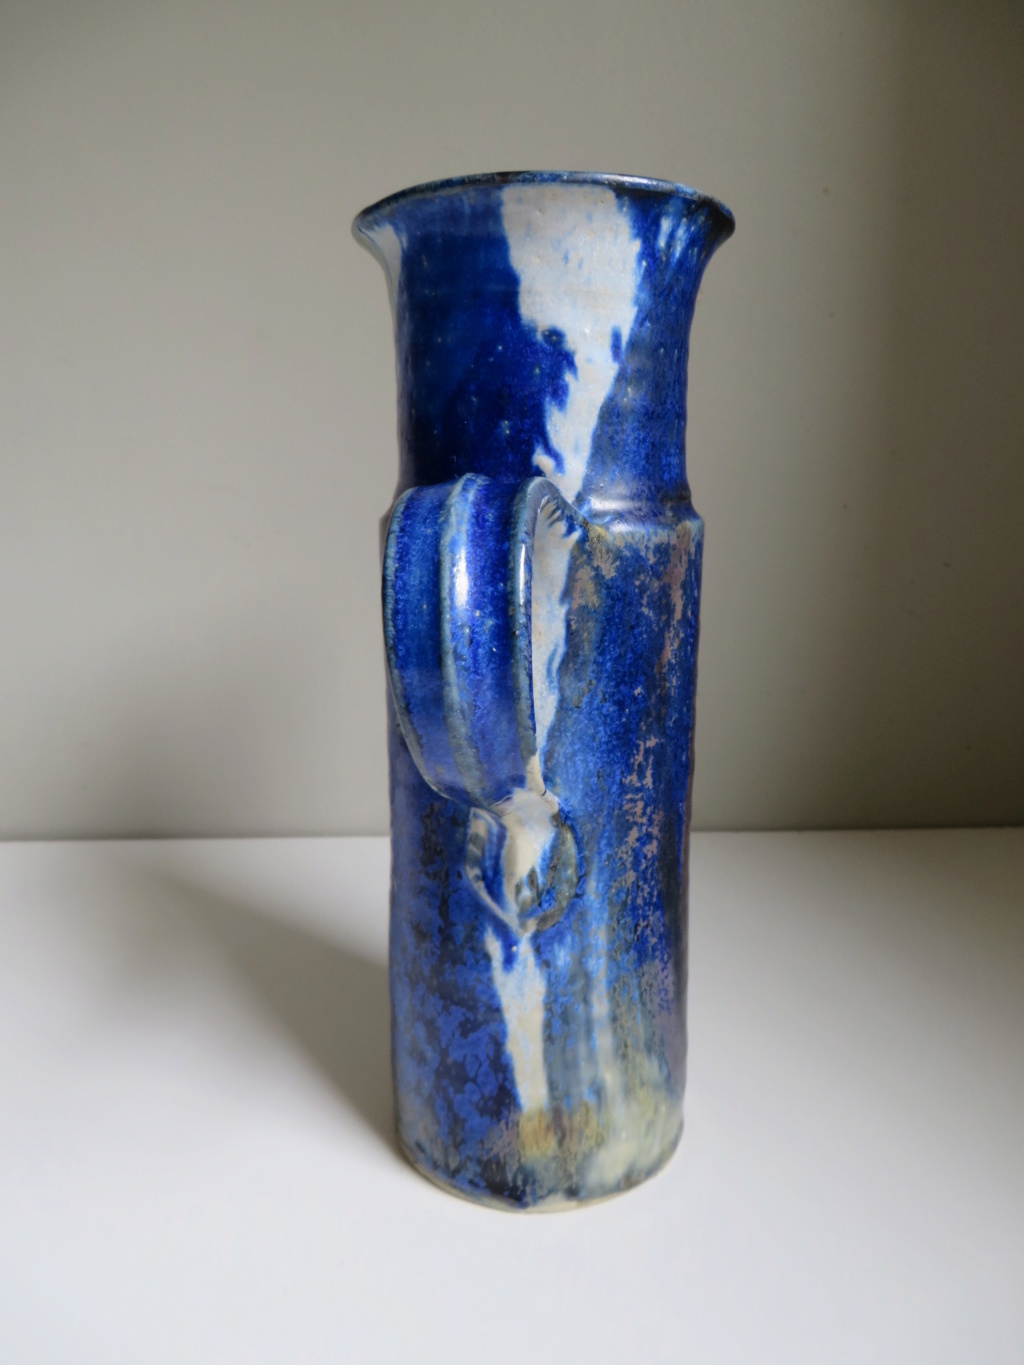 Tall jug with blue flambe like glaze - hand signed - hard to read! Img_0110